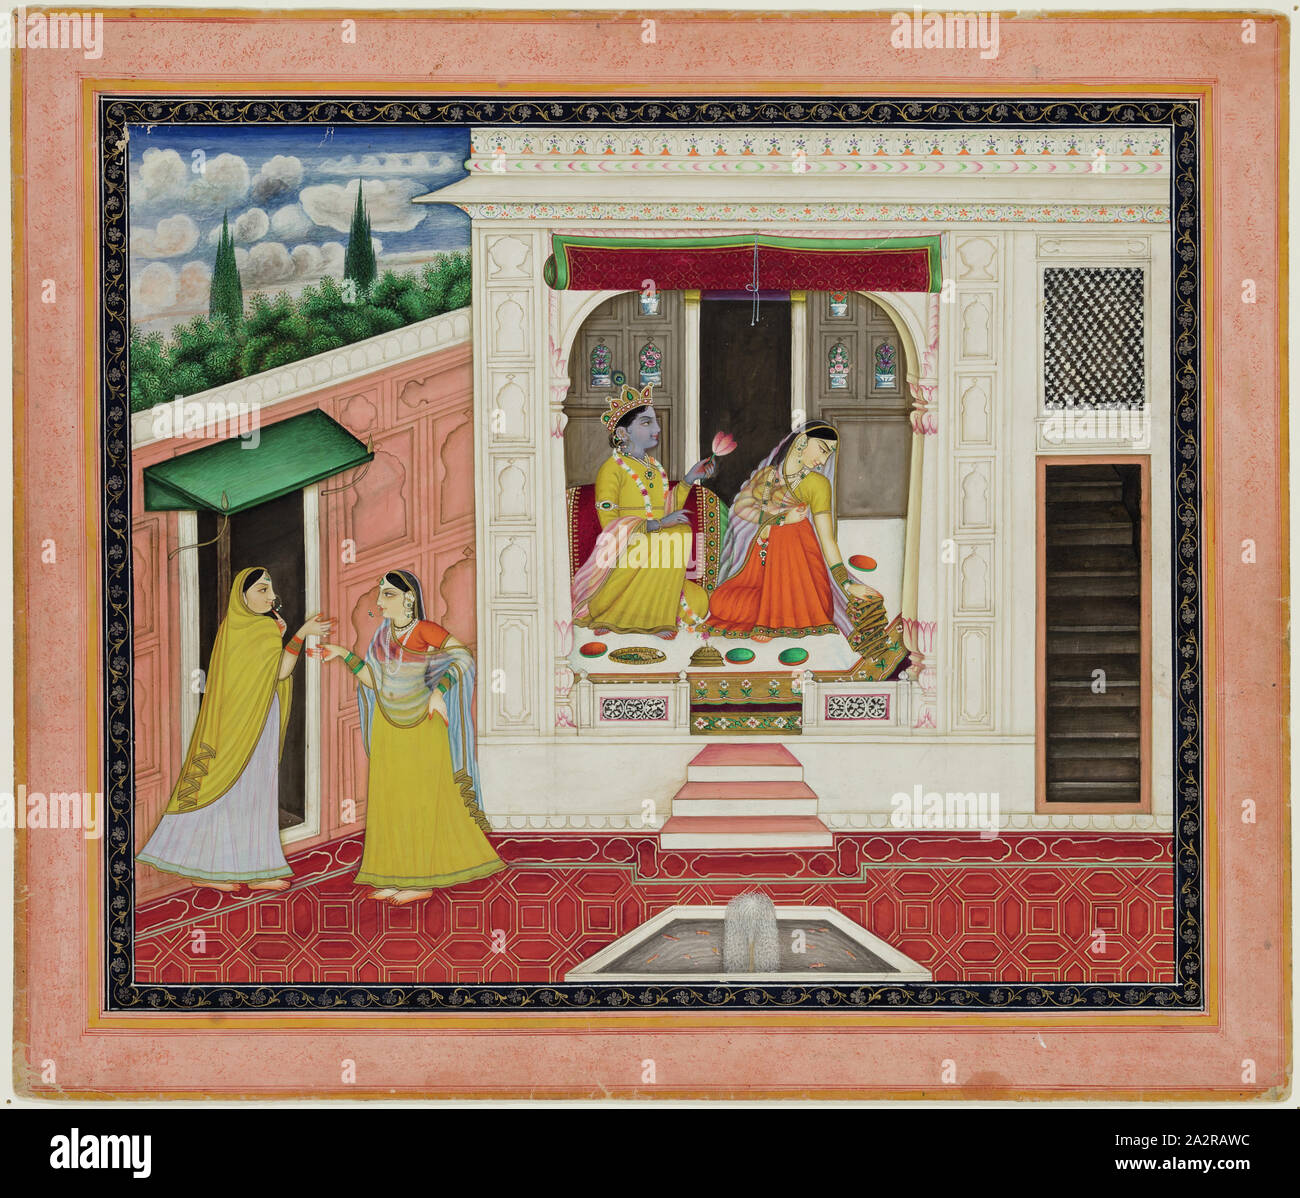 Inconnu (Indien), histoire de Krishna et Radha, ch. 1800 Banque D'Images